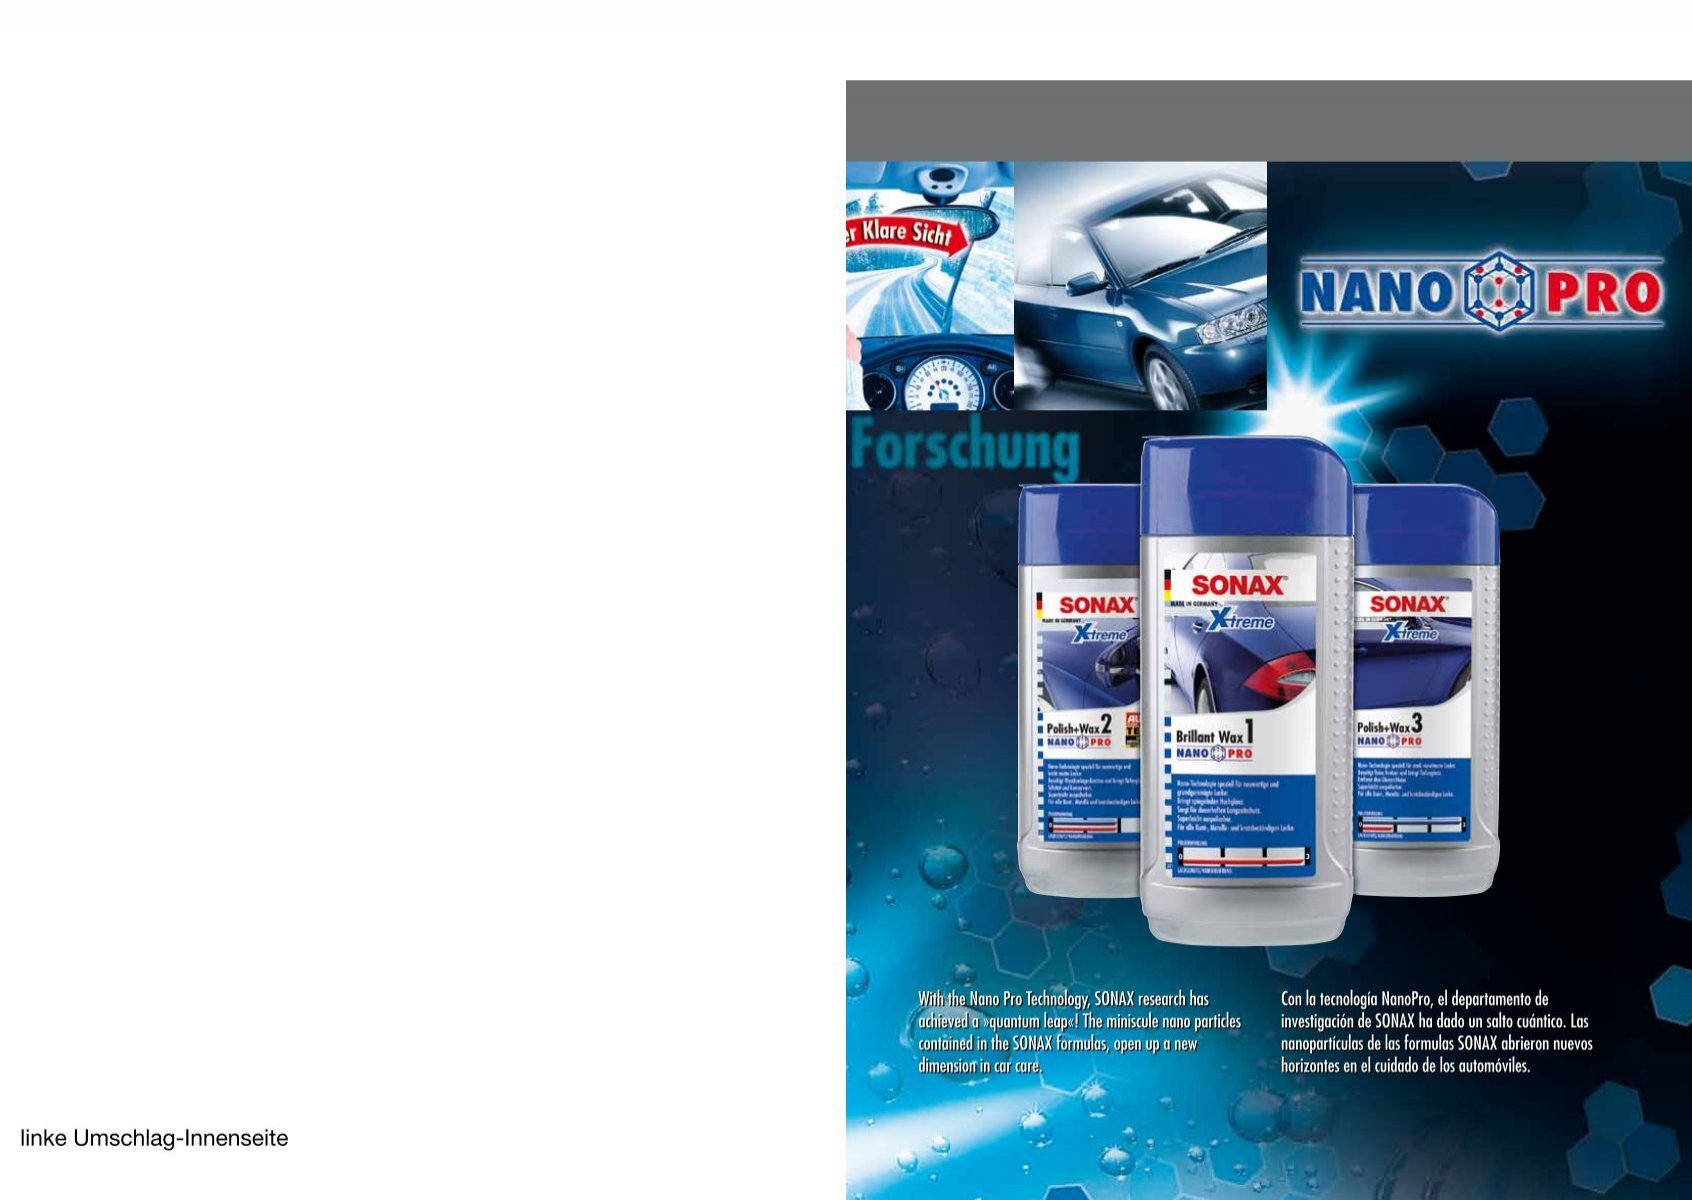 Aditivo Aceite Antifriccion, Prolonga la vida del Motor, Para Motores Diesel  y Gasolina, 250 ml, 516100